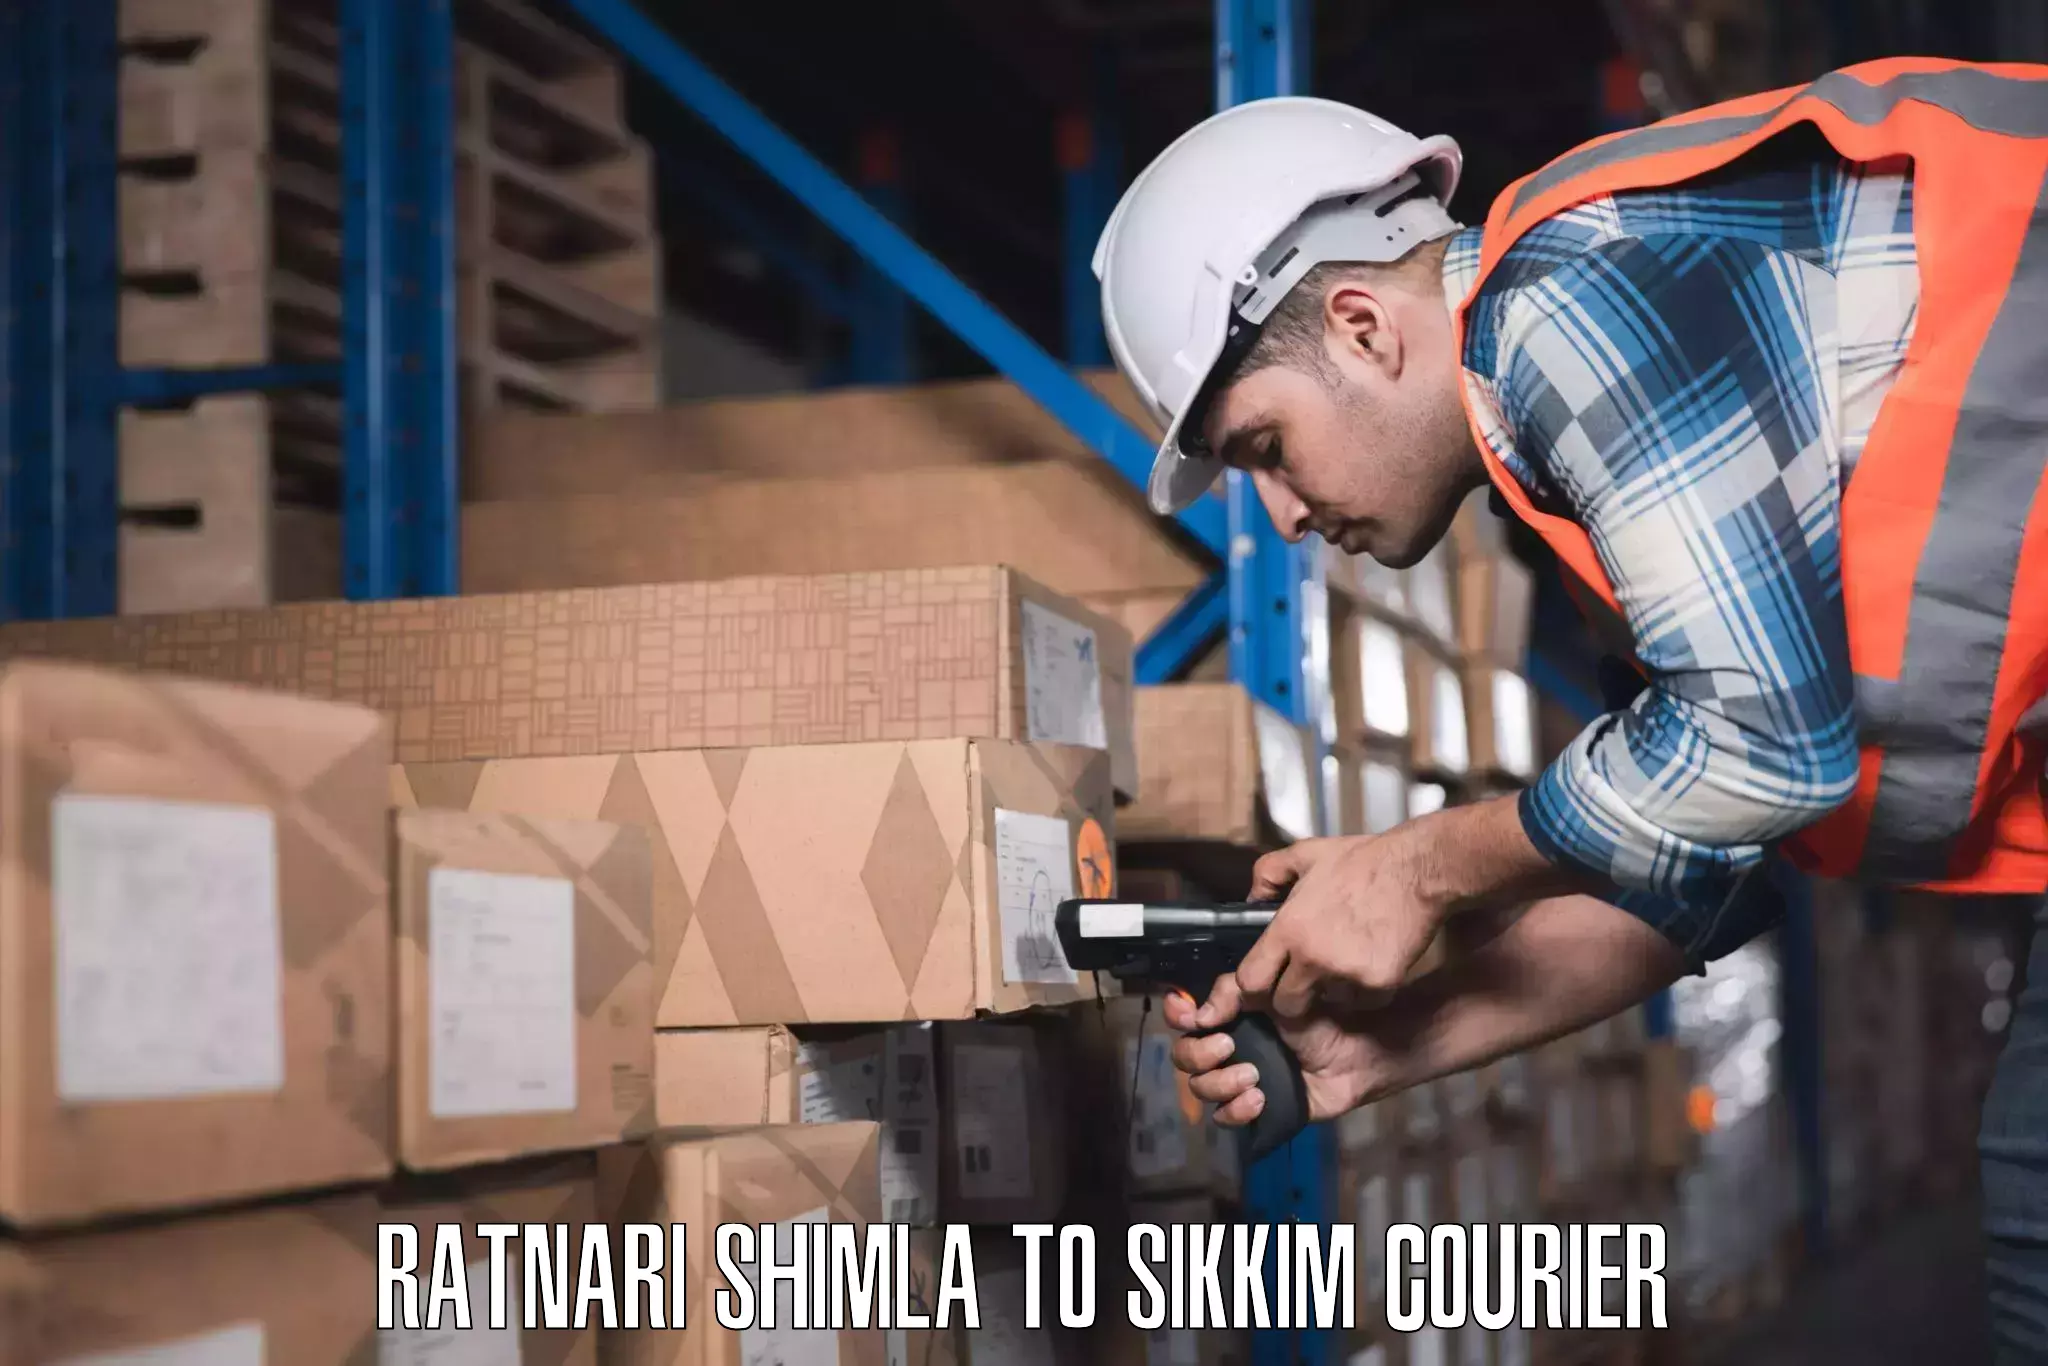 Luggage courier network Ratnari Shimla to Ravangla